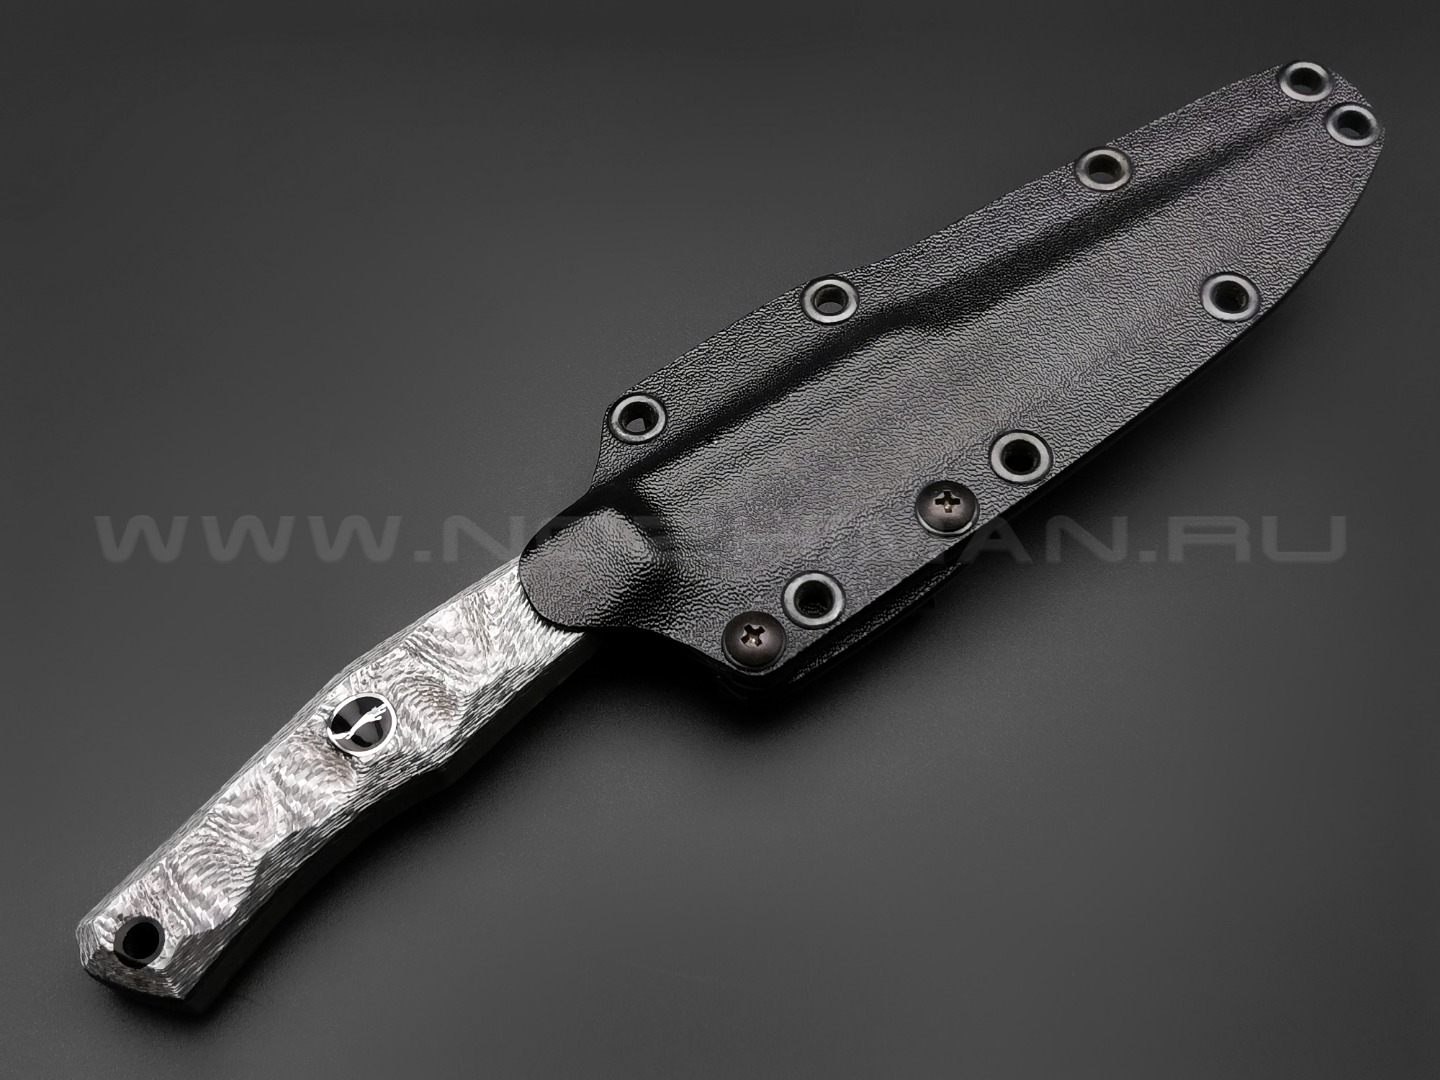 Волчий Век нож Тезис Custom сталь N690 WA, рукоять Silver Twill